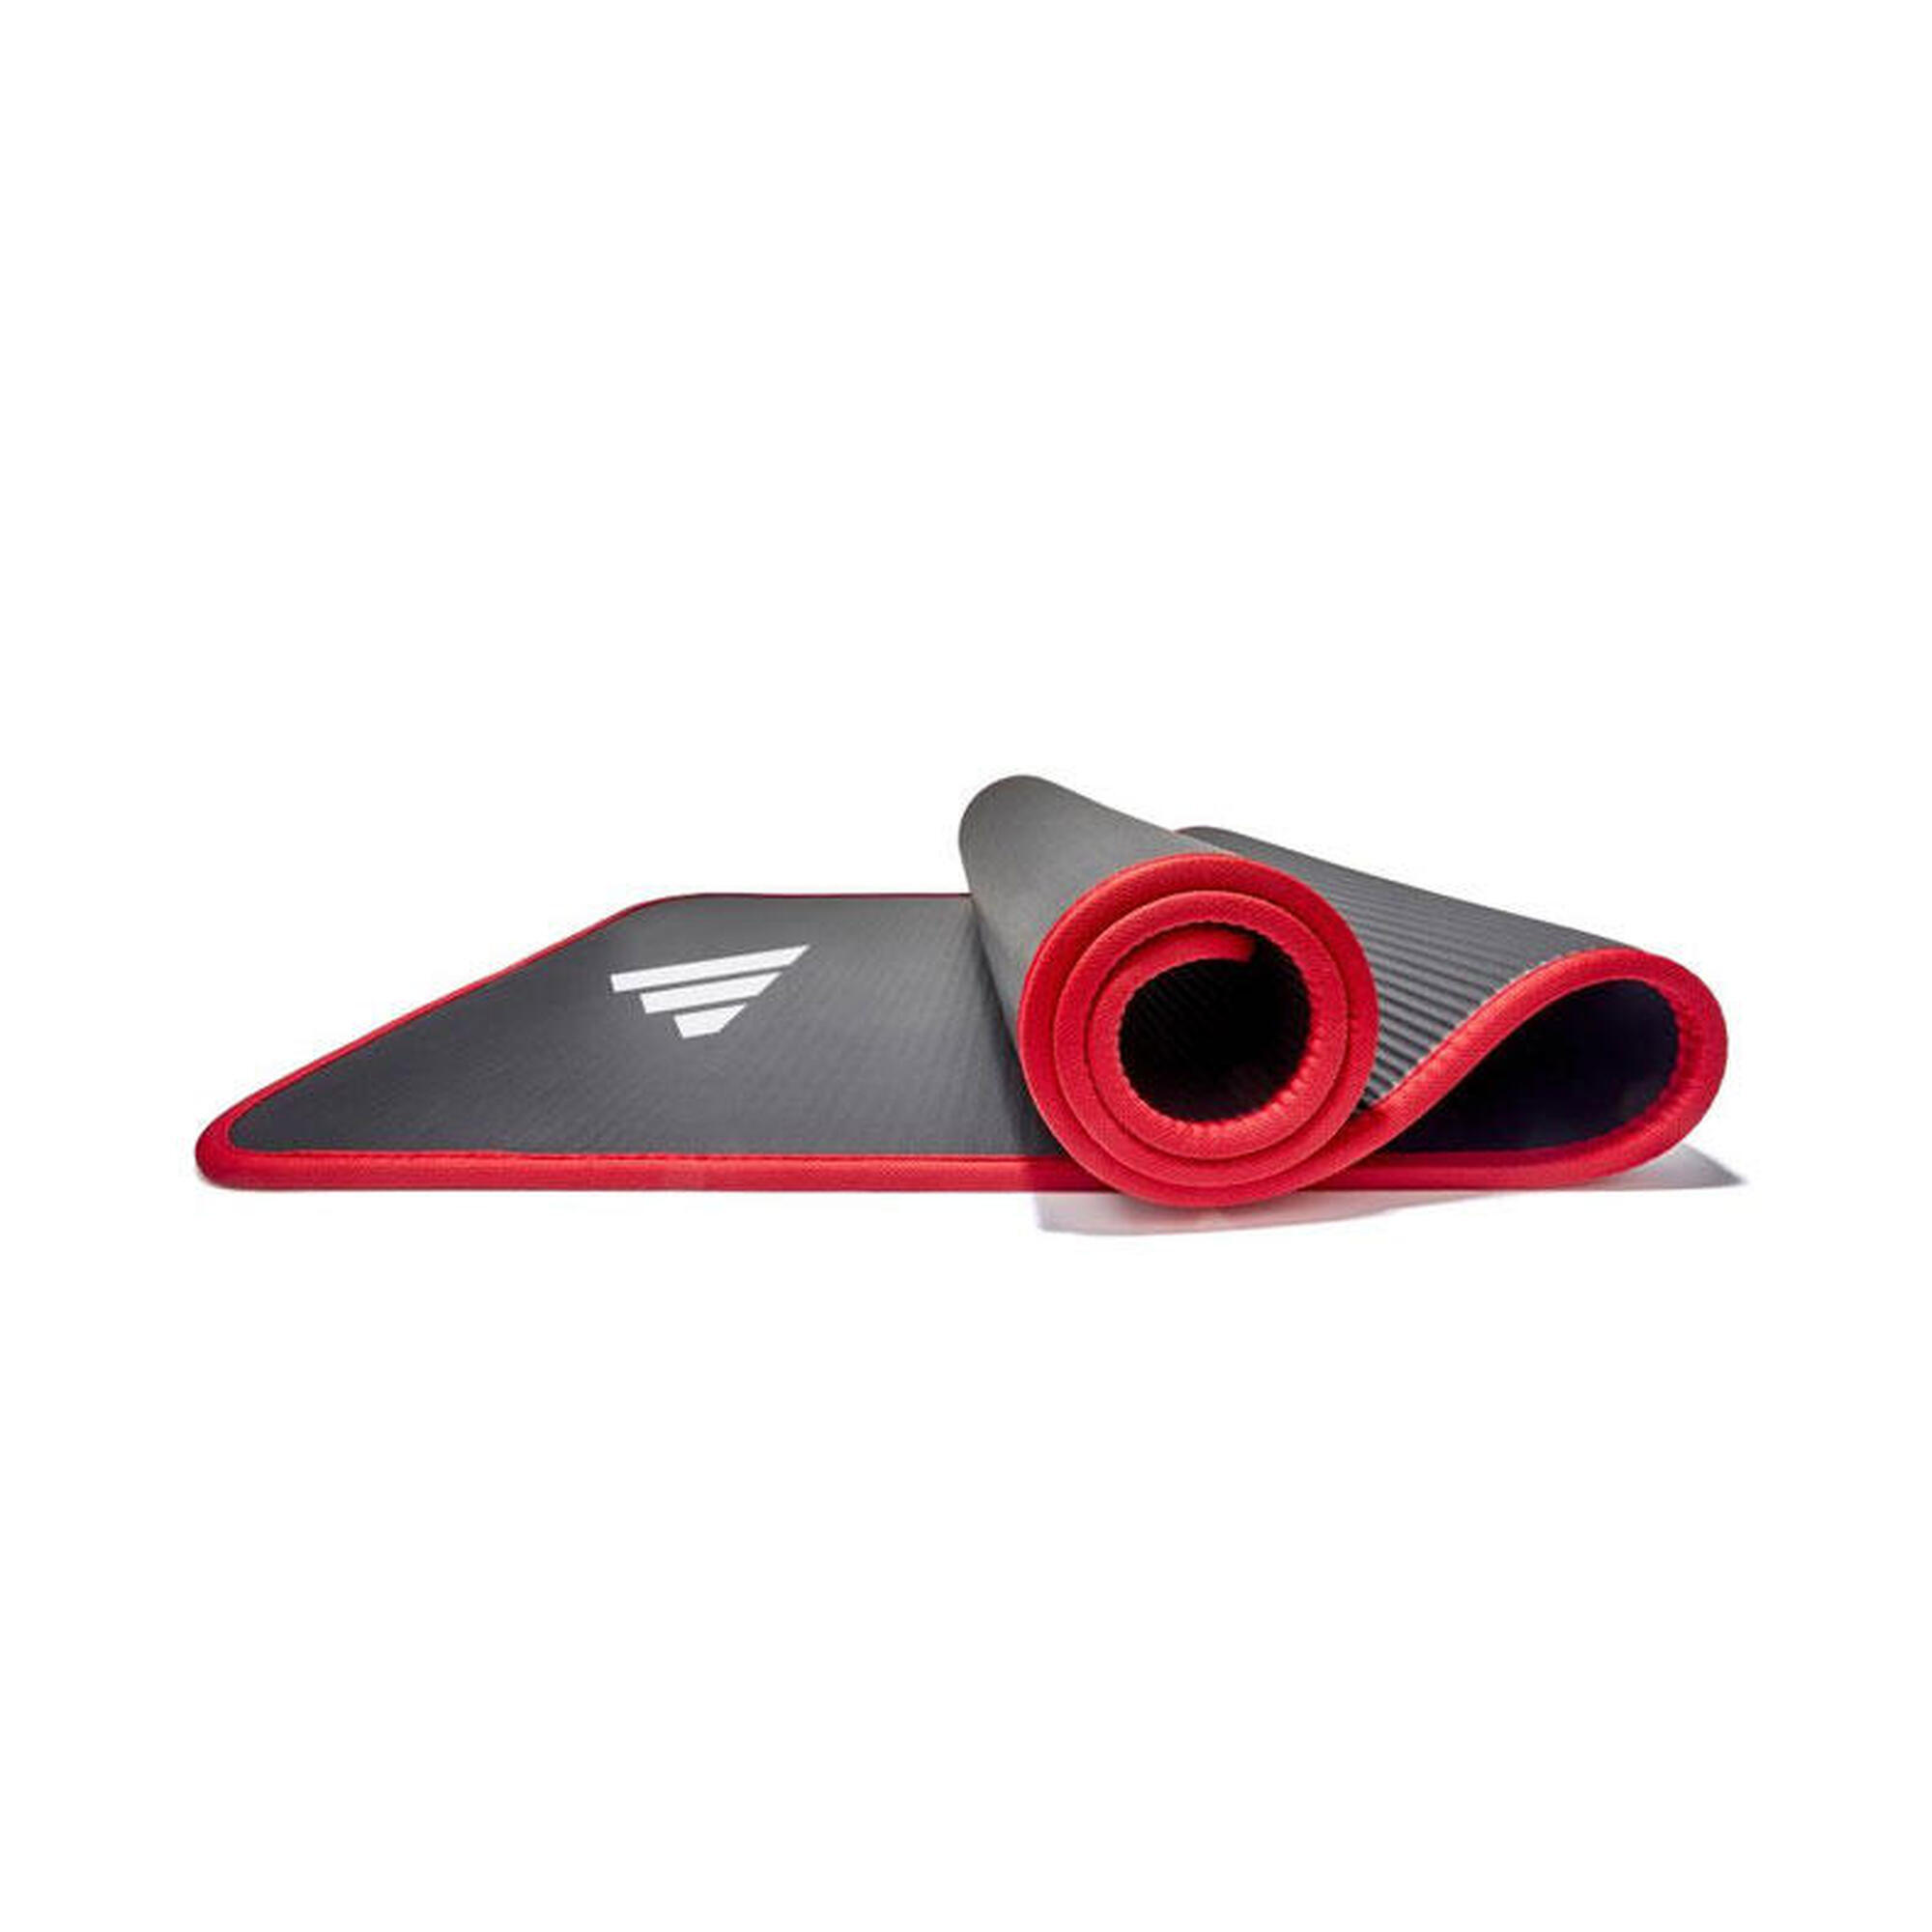 Esterilla de Entrenamiento Adidas - 10mm - Roja